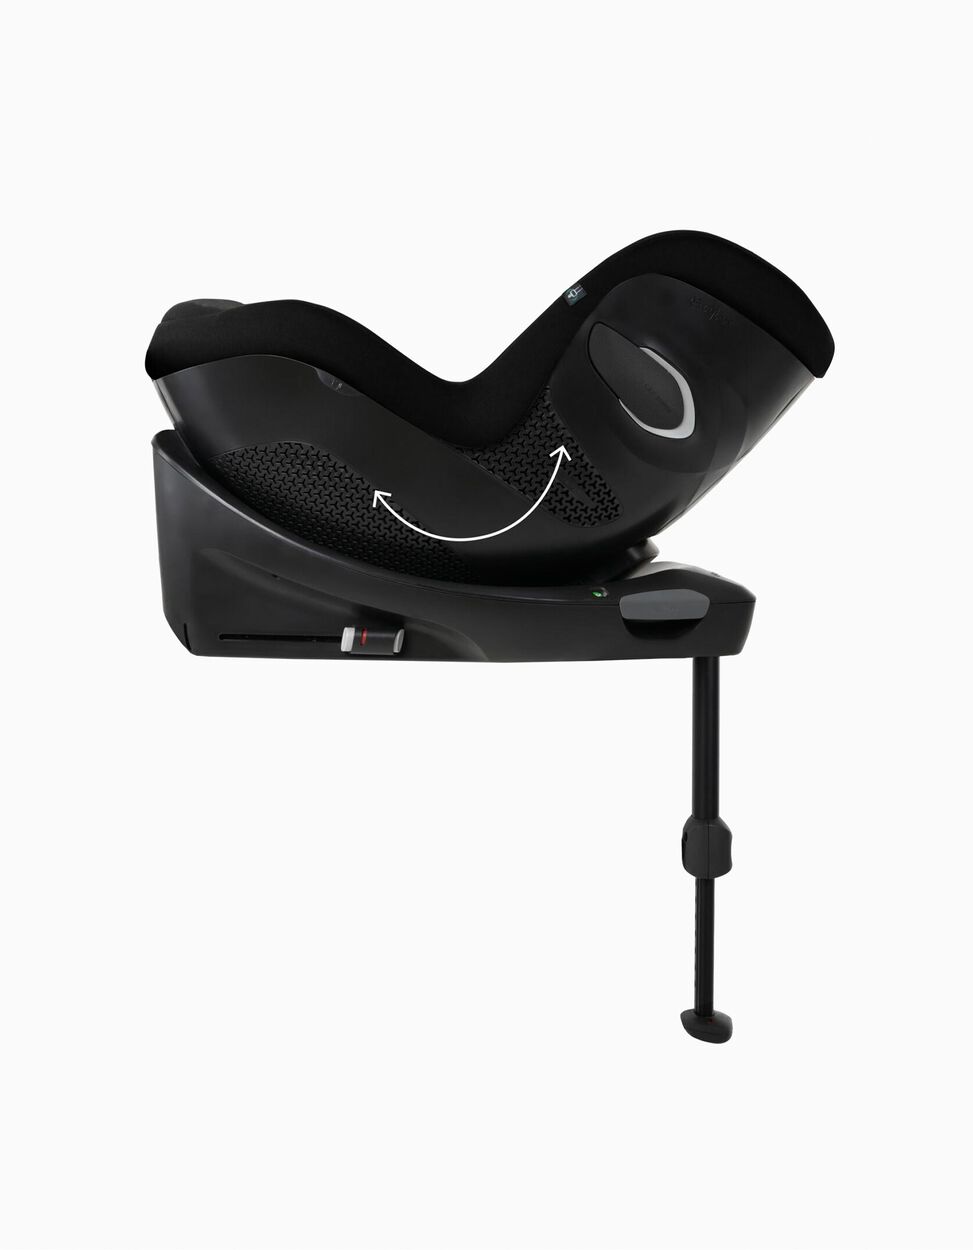 Cadeira Auto I-Size Sirona GI Moon Black Cybex